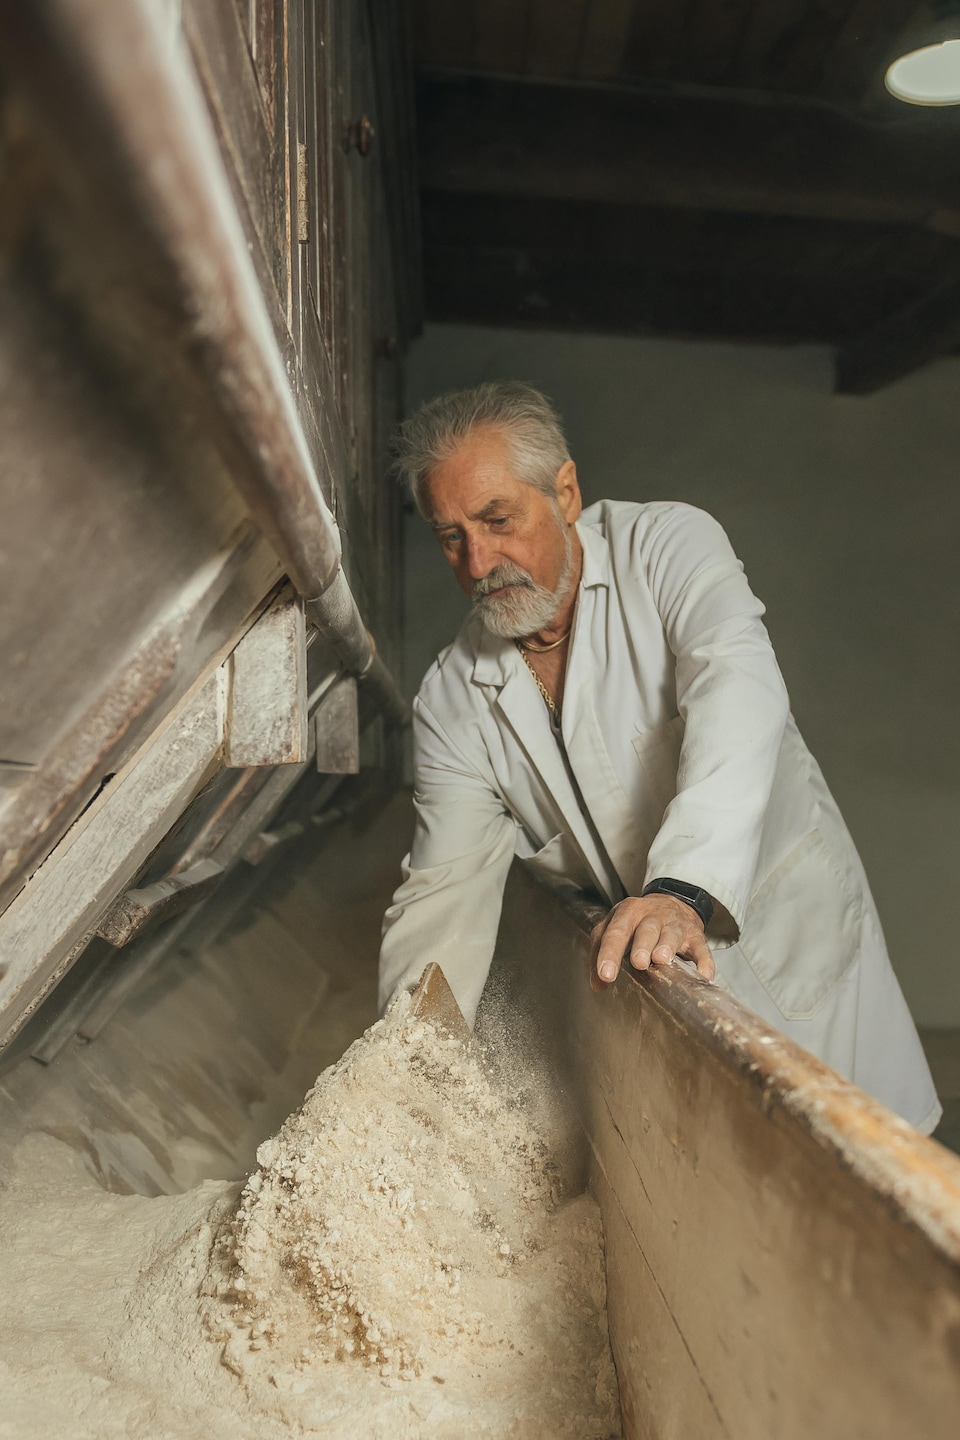 Jean-Guy Tremblay inspecte la farine dans une cuve de bois.